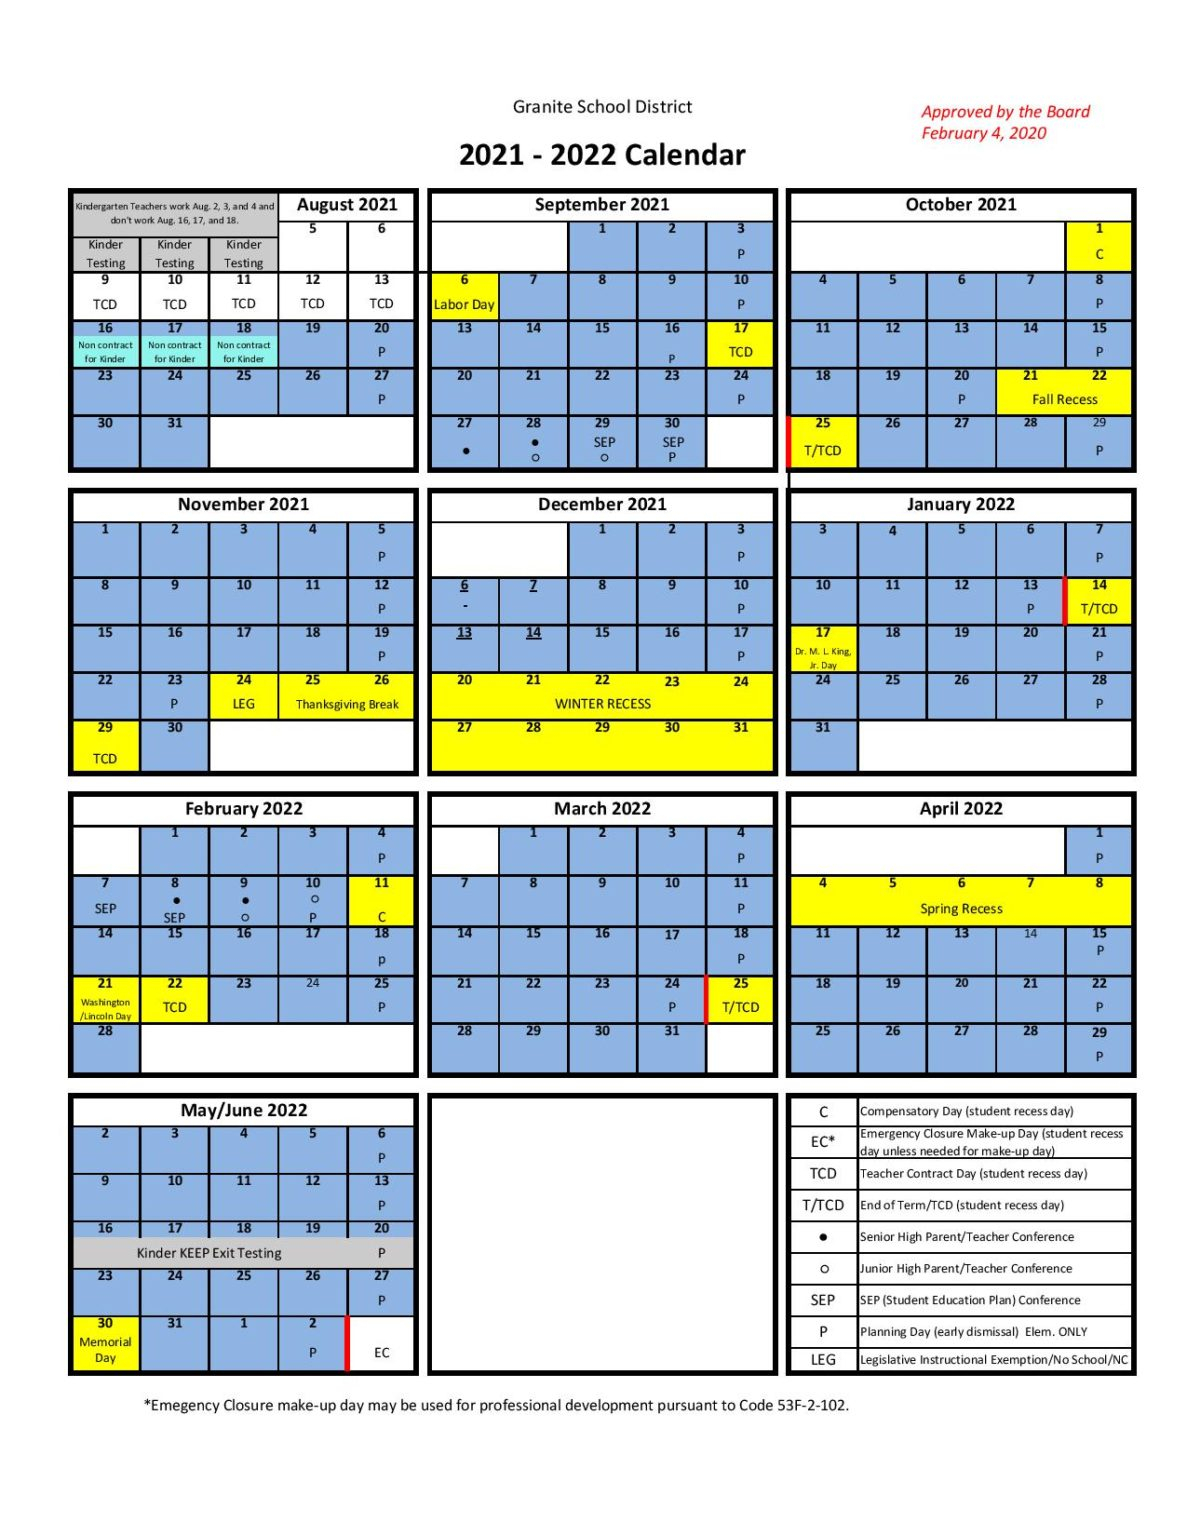 Granite School District Calendar 2021-2022 In Pdf